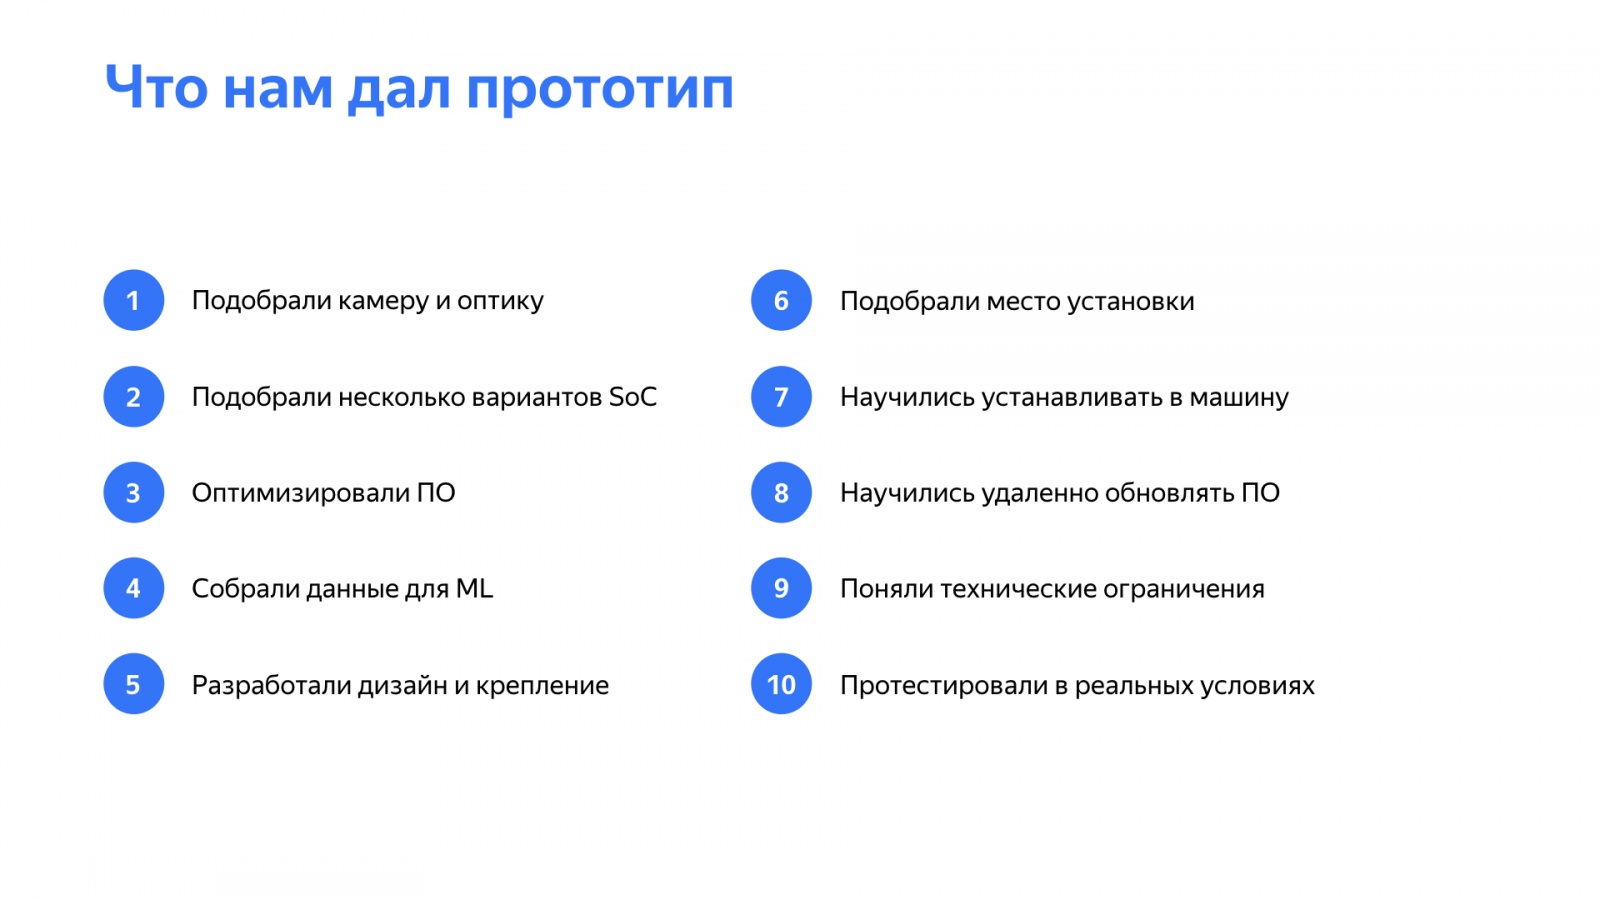 Как быстро делать прототипы устройств и почему это важно. Доклад Яндекс.Такси - 21